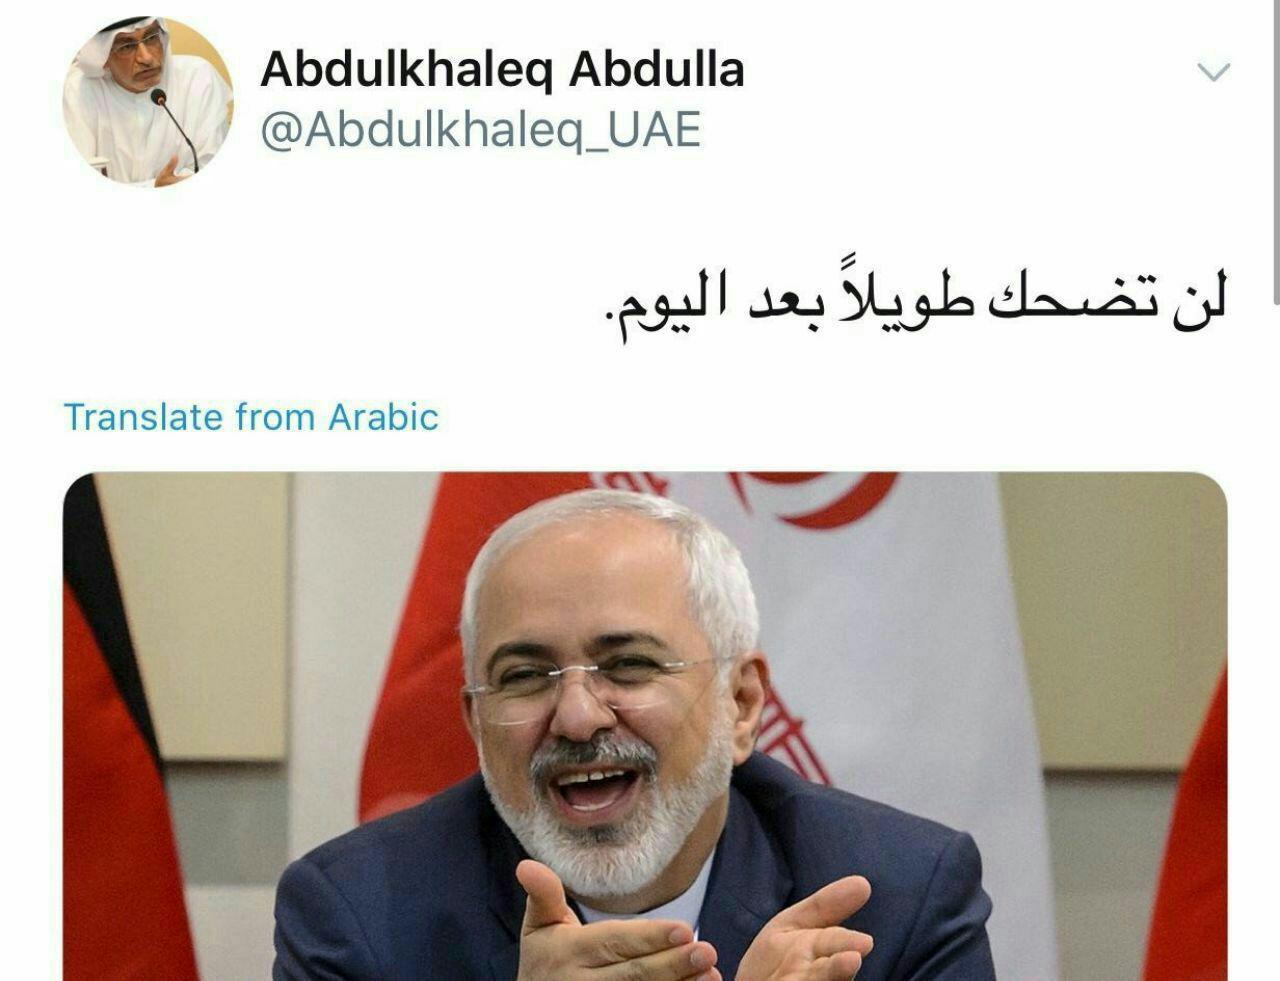 مشاور ولیعهد امارات خطاب به ظریف: دیگر لبخند نخواهی زد! +عکس